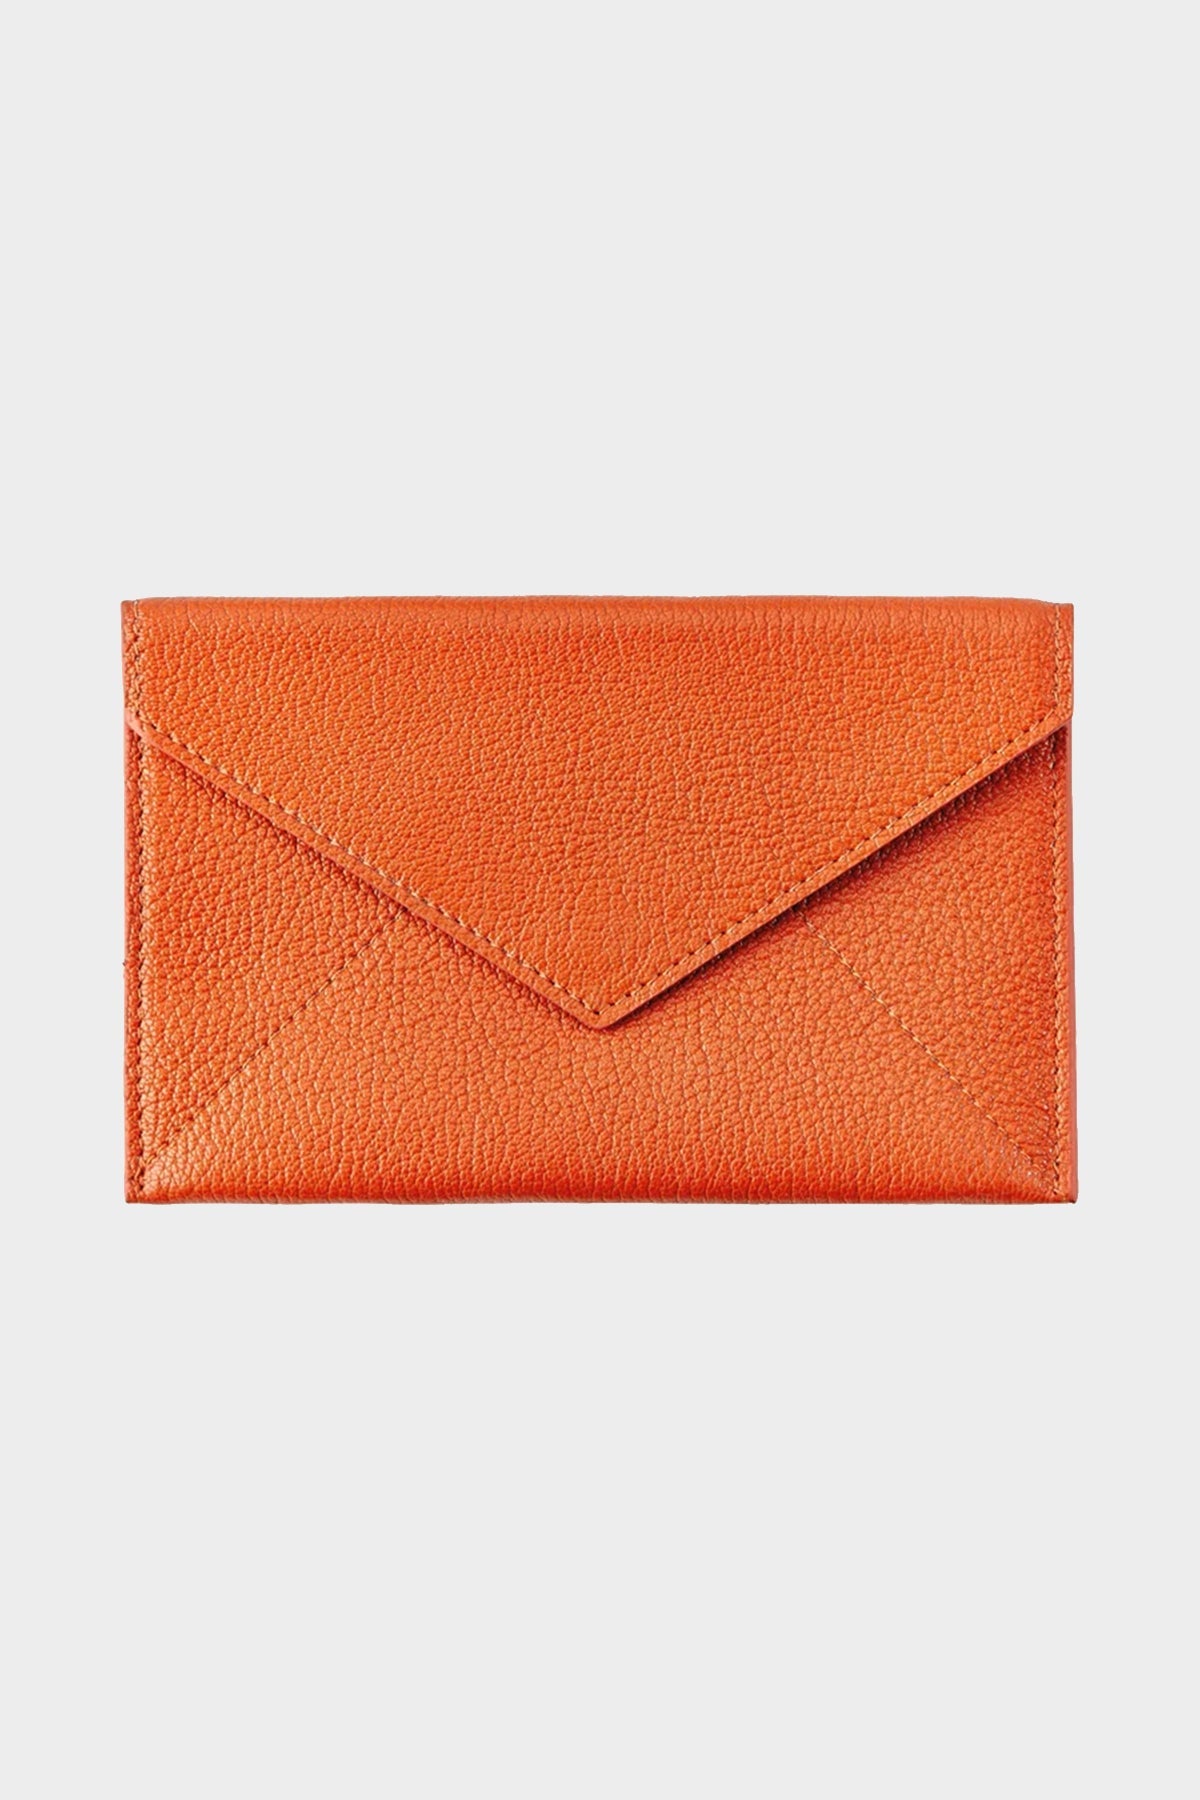 Orange Goatskin Leather Medium Envelope - shop-olivia.com